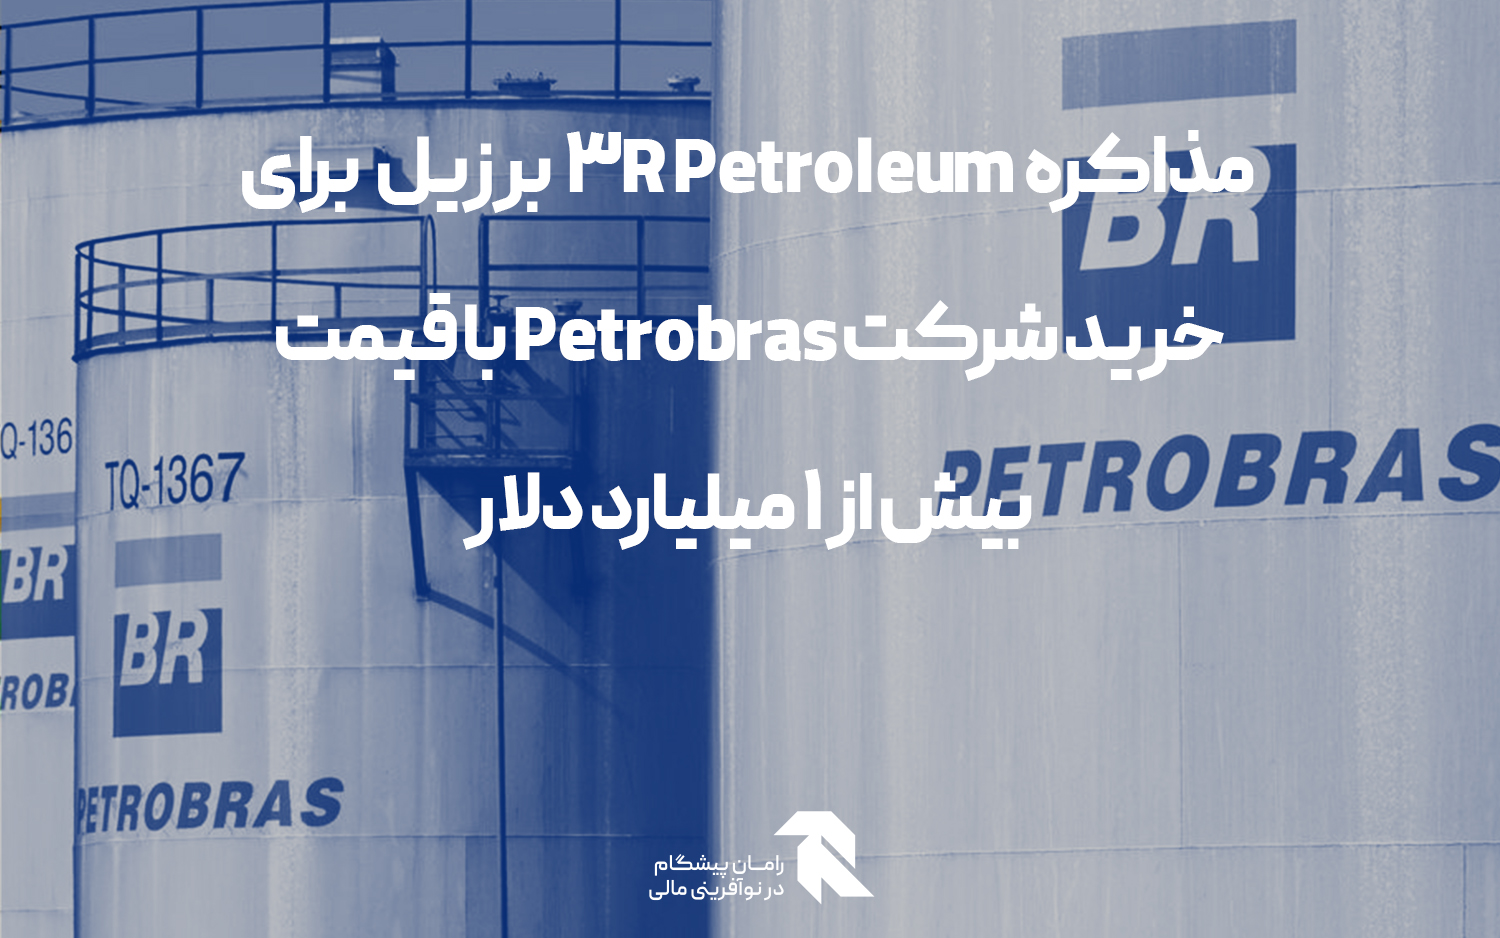 3R Petroleum  برزیل در حال مذاکره برای خرید شرکت Petrobras با قیمت بیش از 1 میلیارد دلار است!